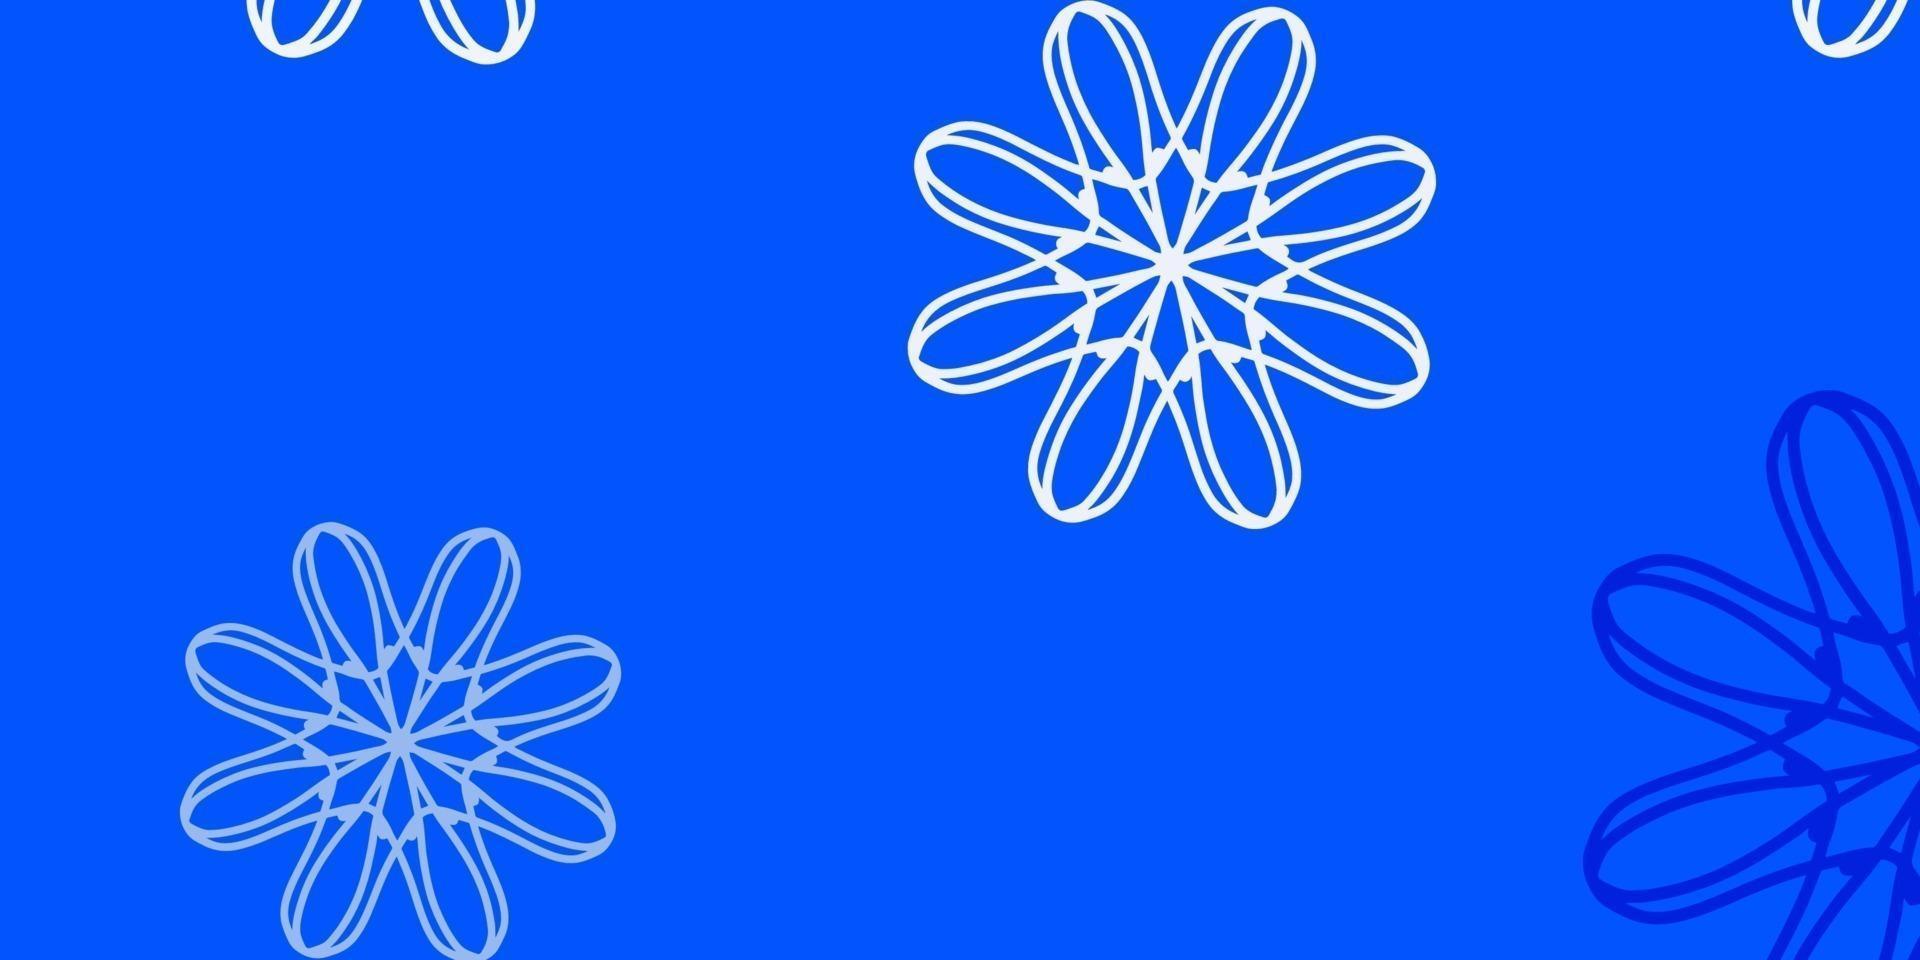 textura de doodle de vector rosa claro, azul con flores.